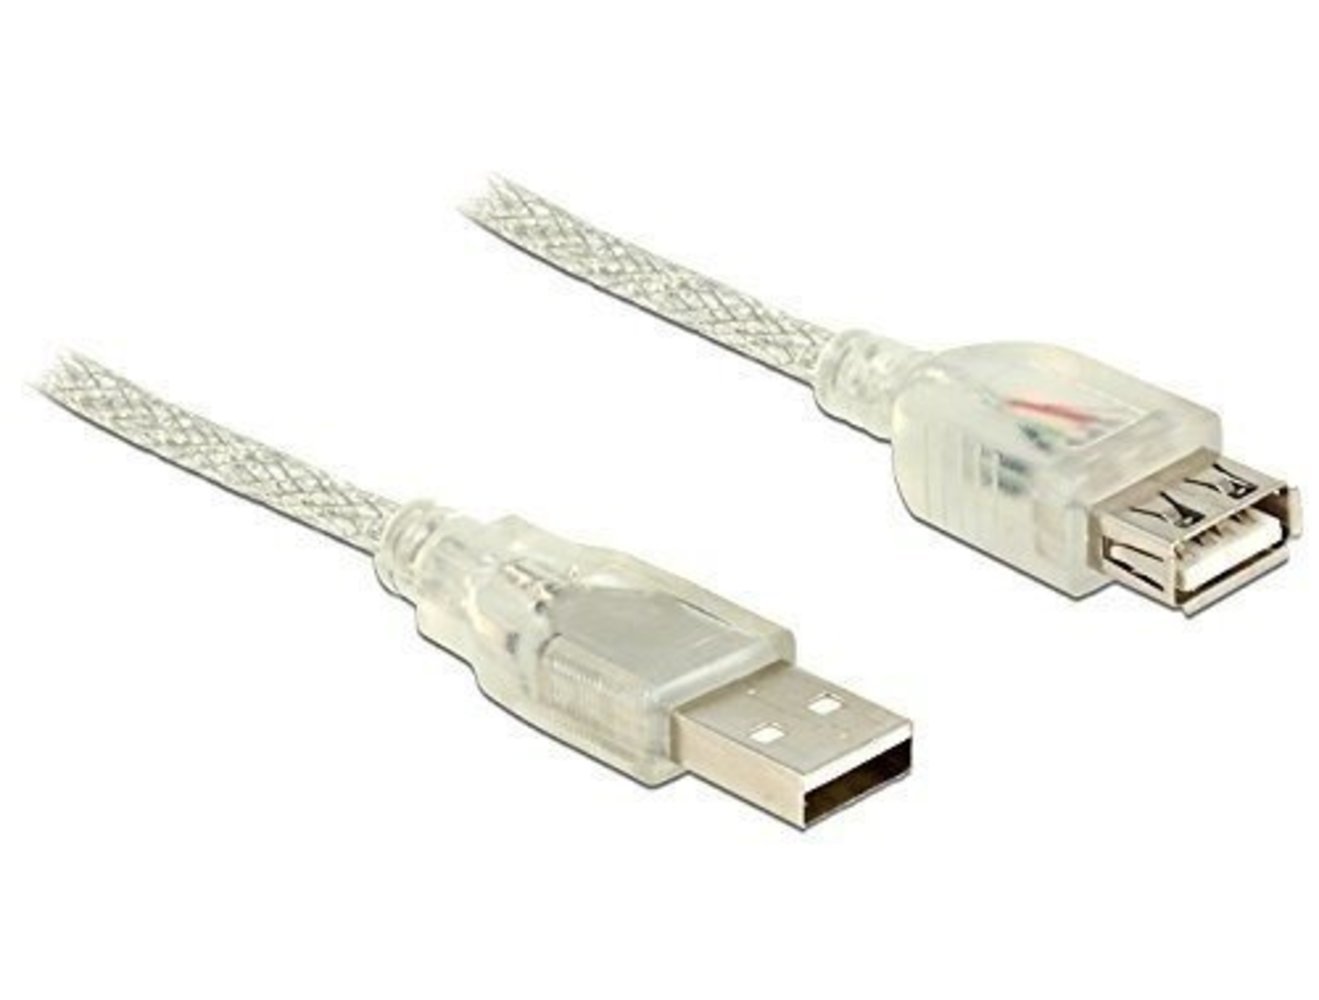 DELOCK Verlängerungskabel USB 2.0 Typ-A Stecker > USB 2.0 Typ-A Buchse 0.5 m transparent - hochwertiges und langlebiges USB Verlängerungskabel